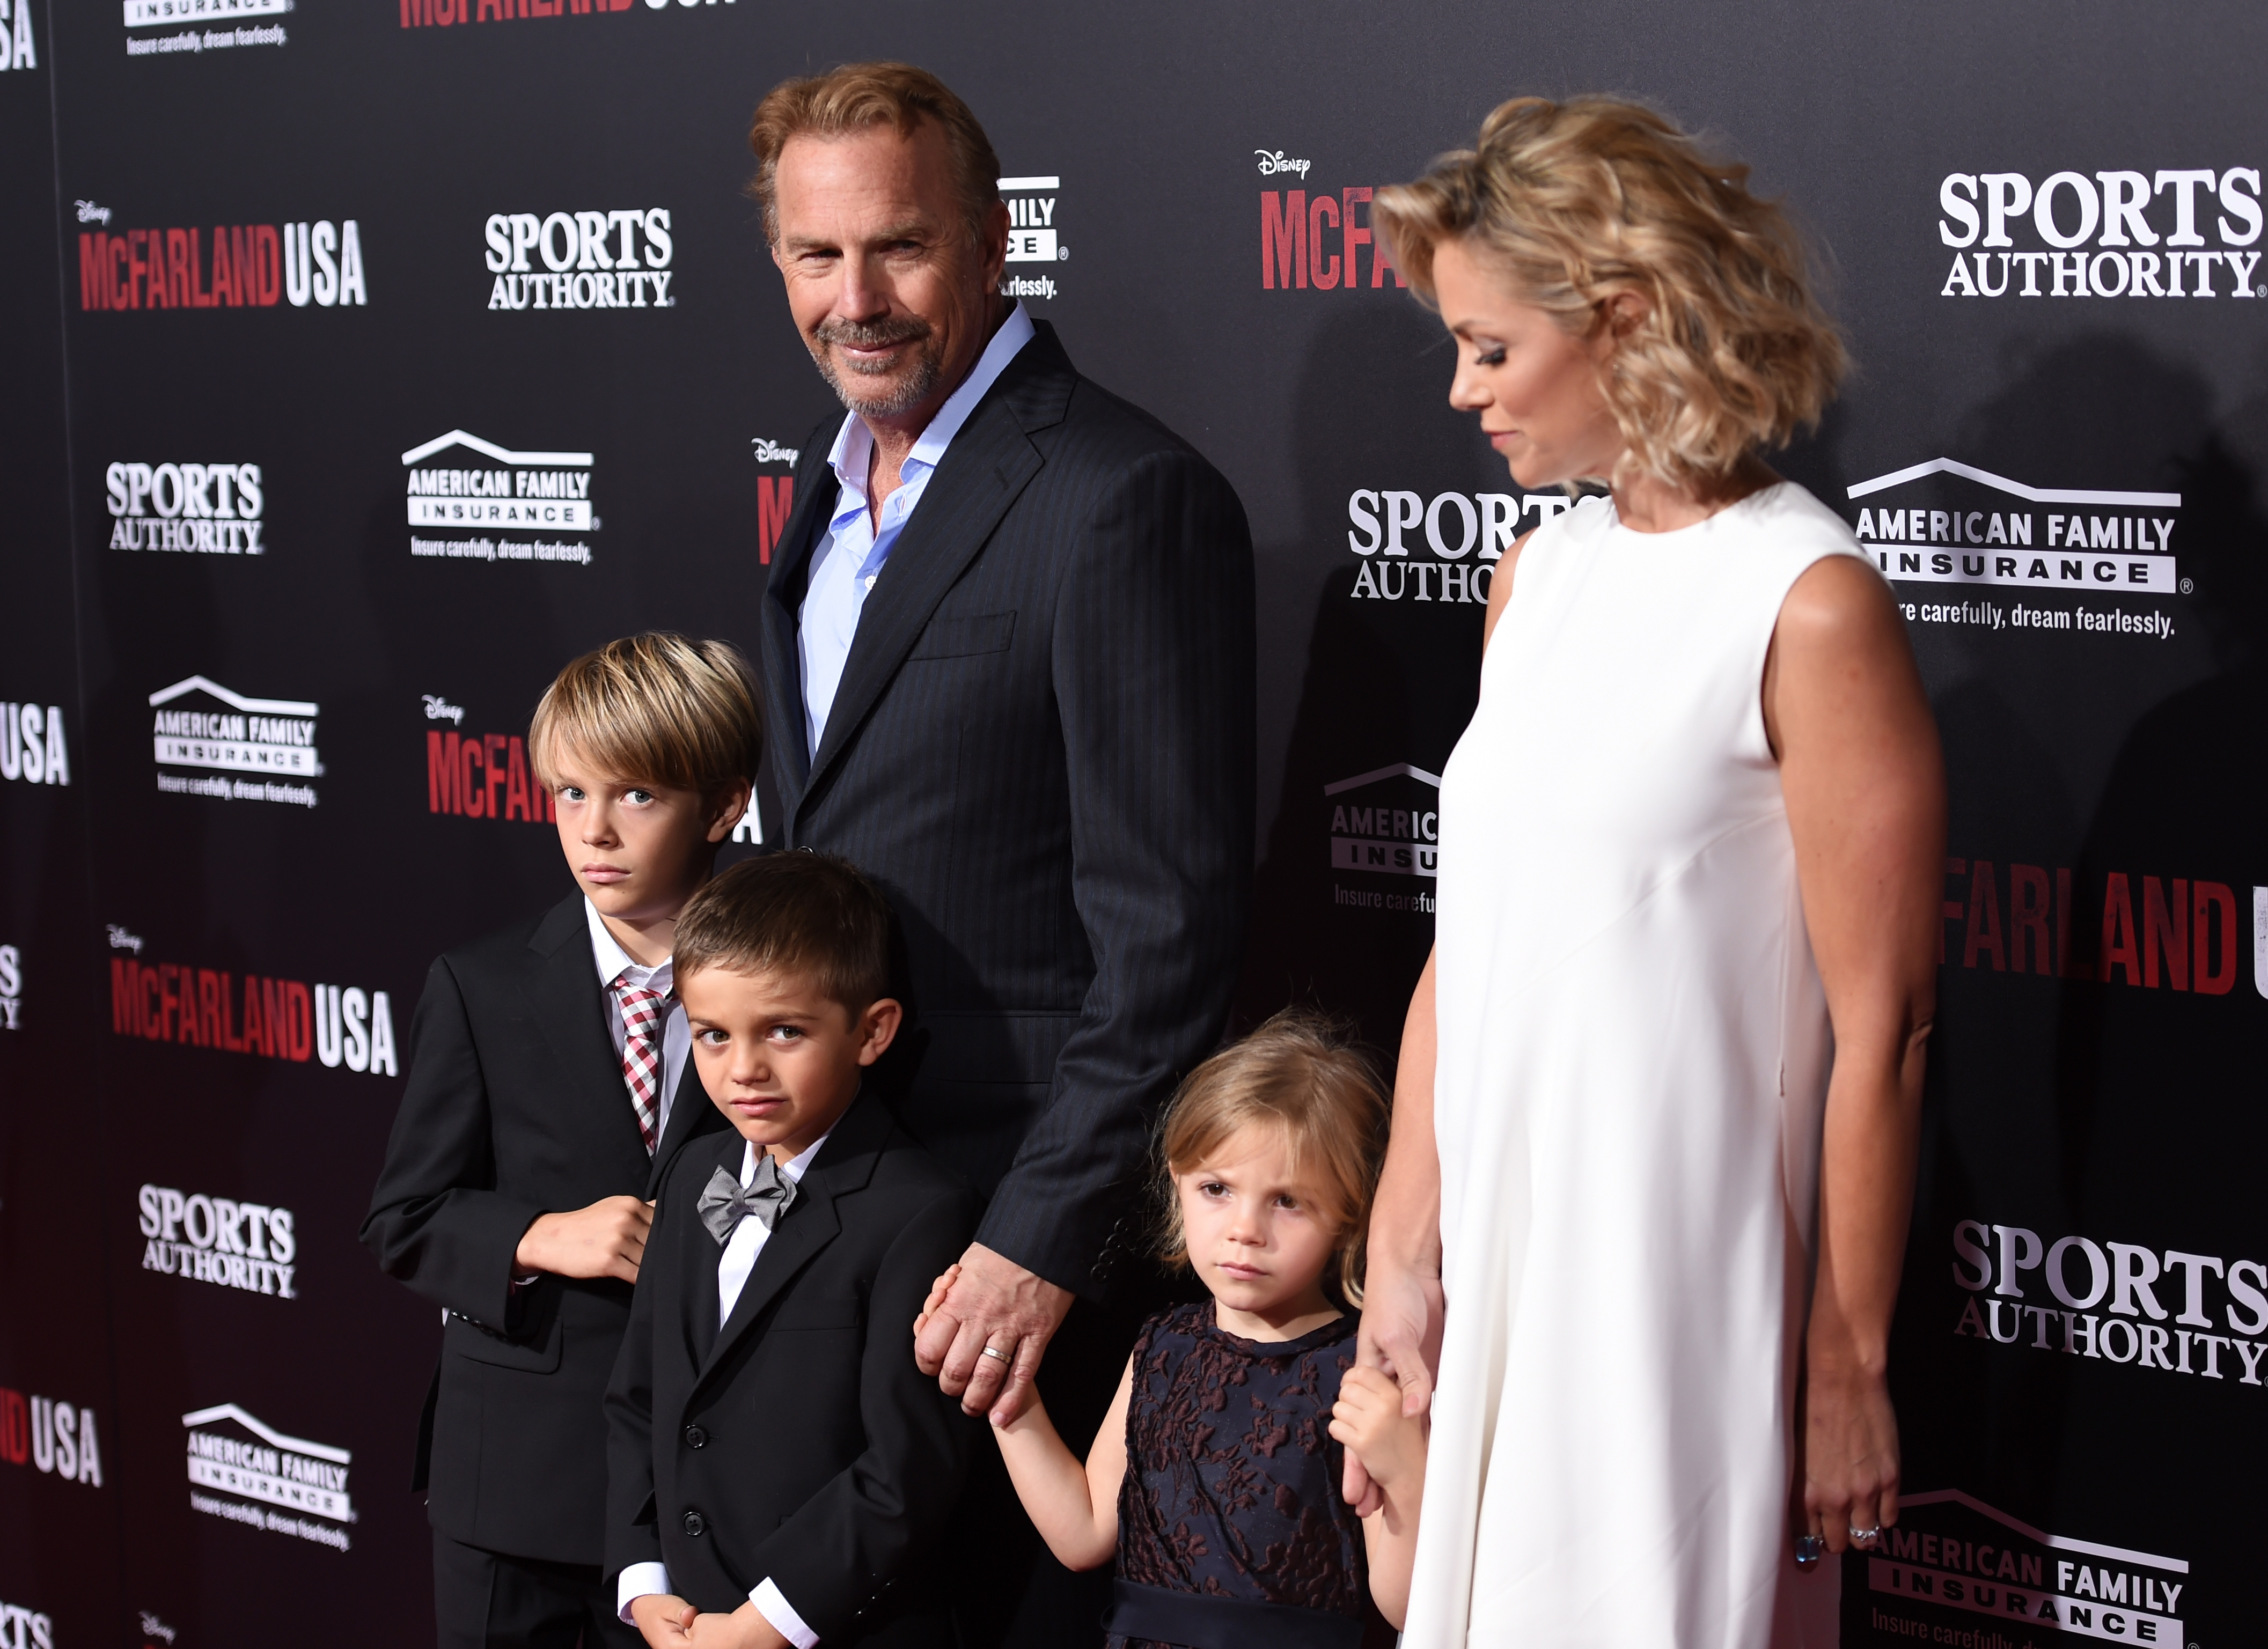 Kevin Costner, su esposa Christine Baumgartner, y sus hijos en el estreno mundial de "McFarland, USA", el 9 de febrero de 2015, en Hollywood, California. | Foto: Getty Images